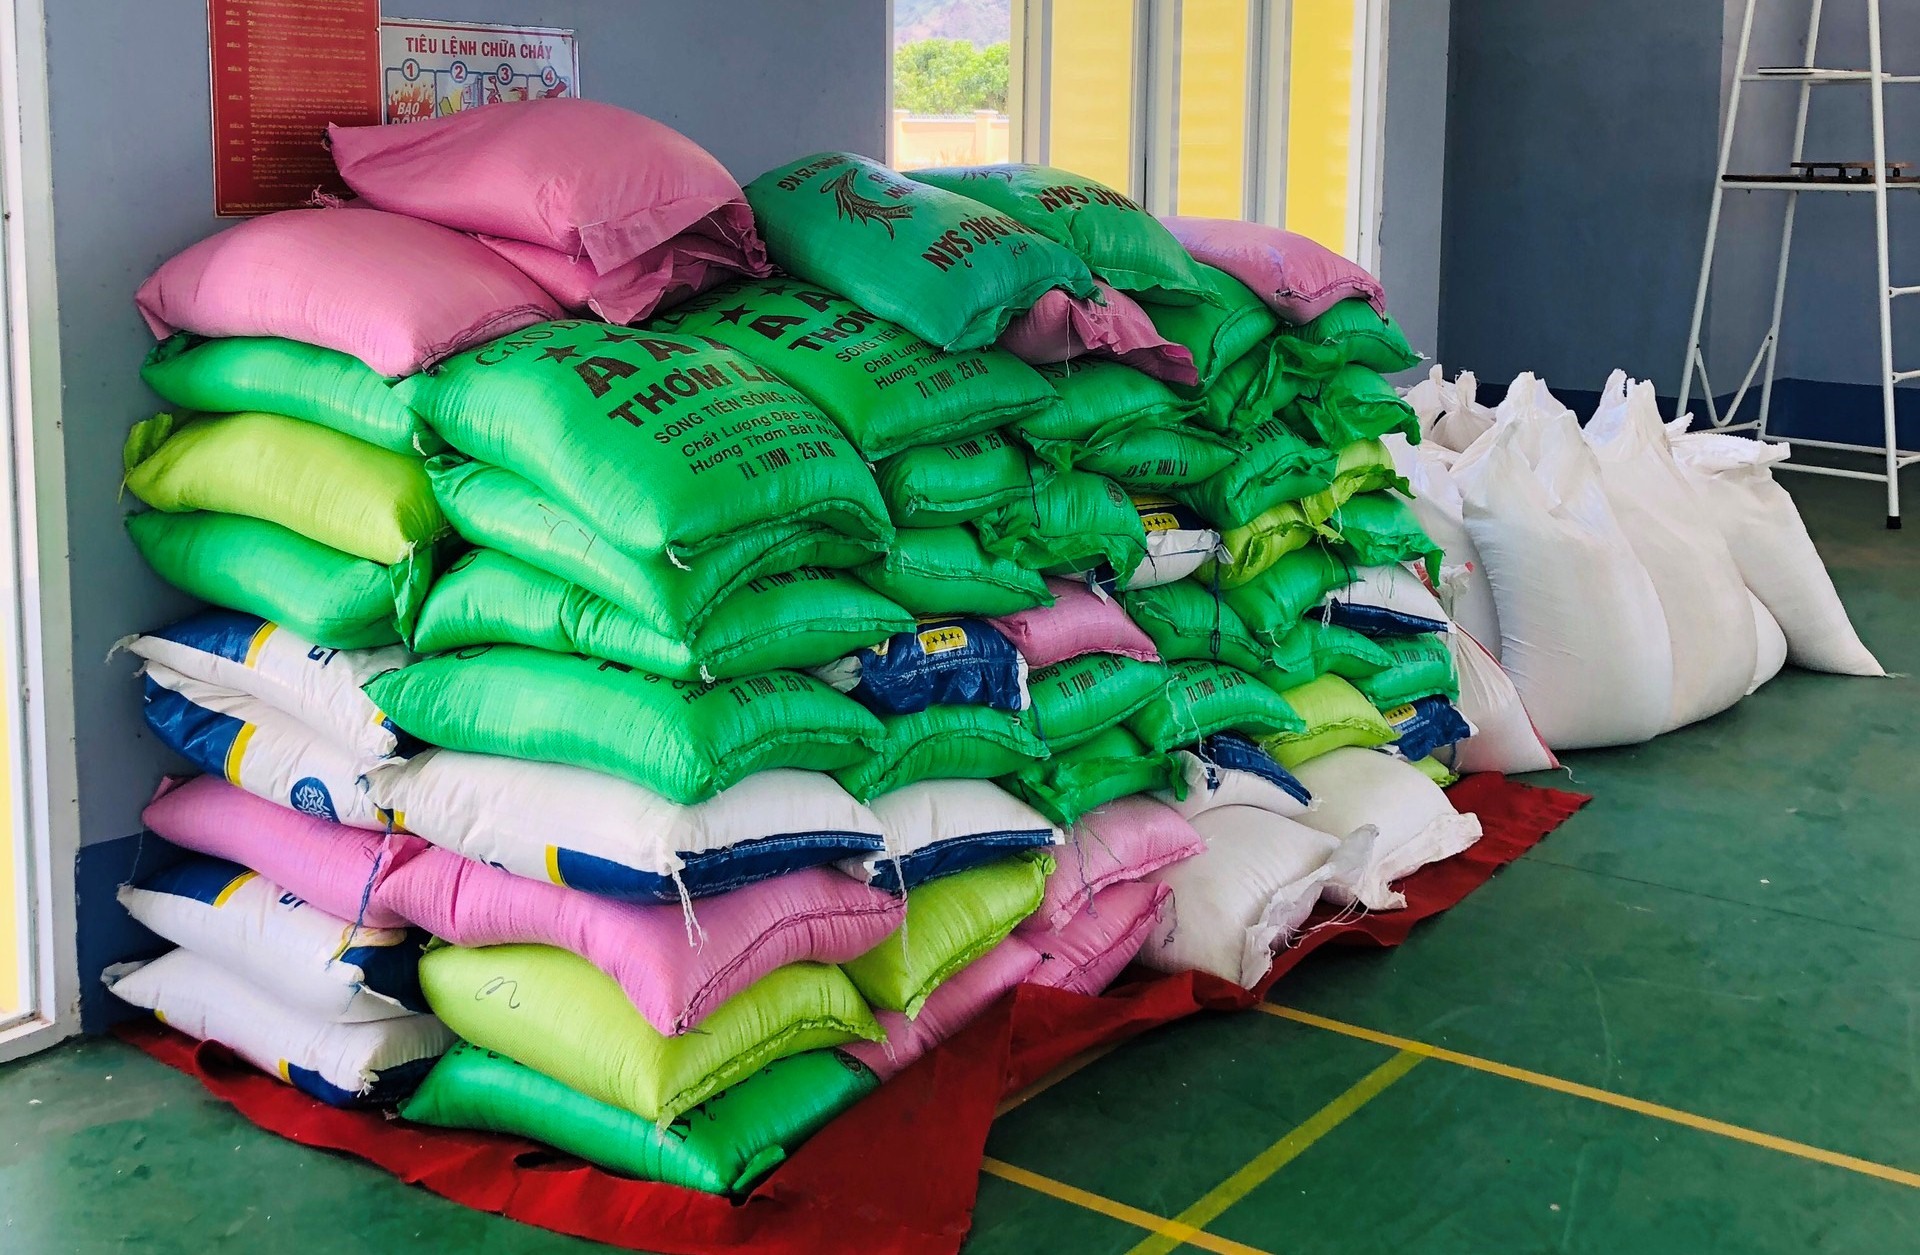 Hiện Tỉnh đoàn đã kêu gọi các mạnh thường quân hỗ trợ 10 tấn gạo để triển khai phát cho công nhân. Ảnh: Phương Linh